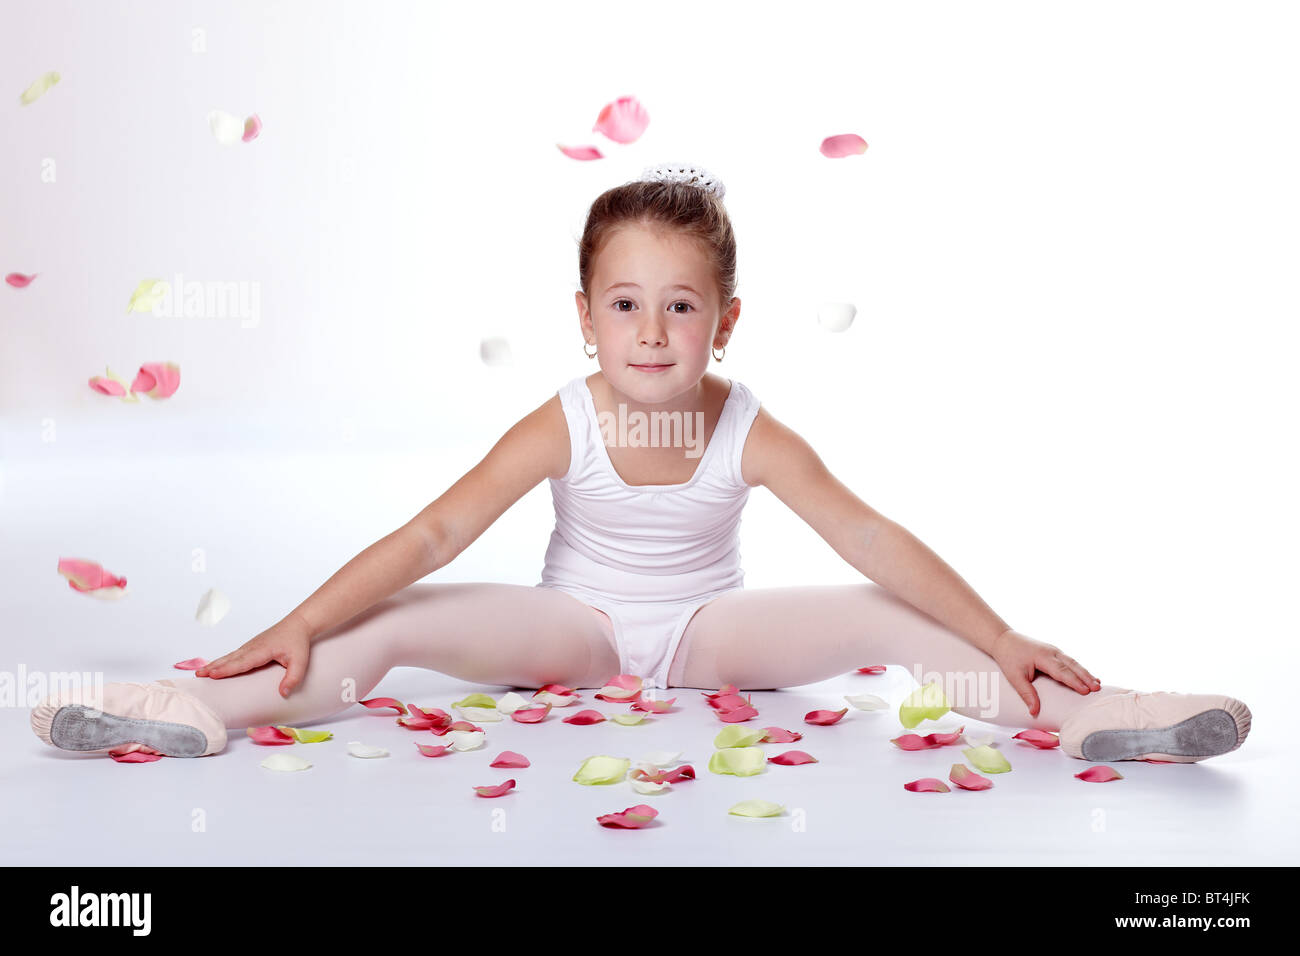 Young ballerina exercising Stock Photo